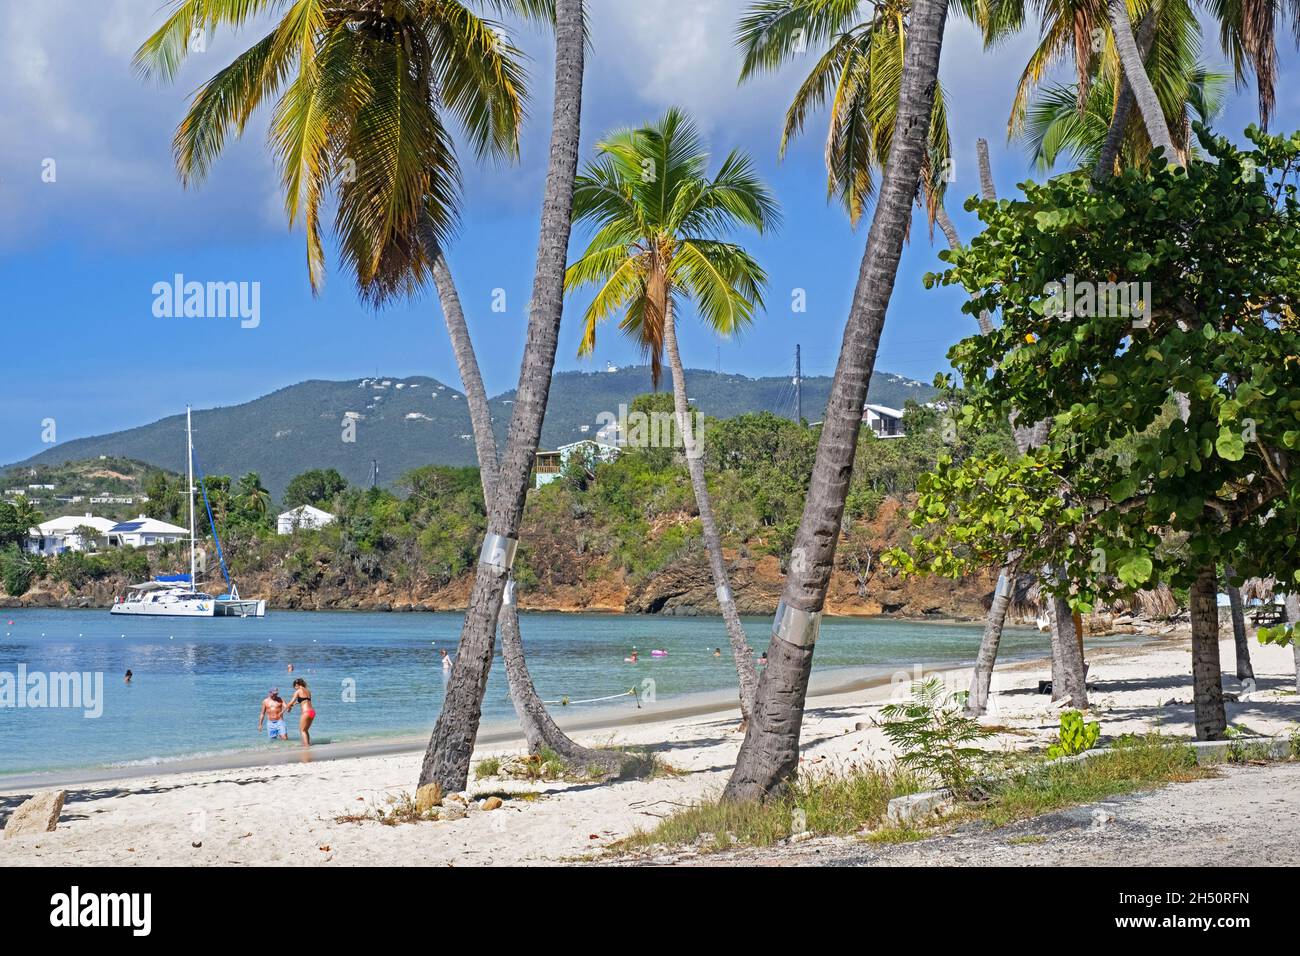 Touristes sur une plage de sable blanc avec des palmiers le long de la baie de Druif à Water Island, au sud de Saint Thomas, îles Vierges américaines dans la mer des Caraïbes Banque D'Images